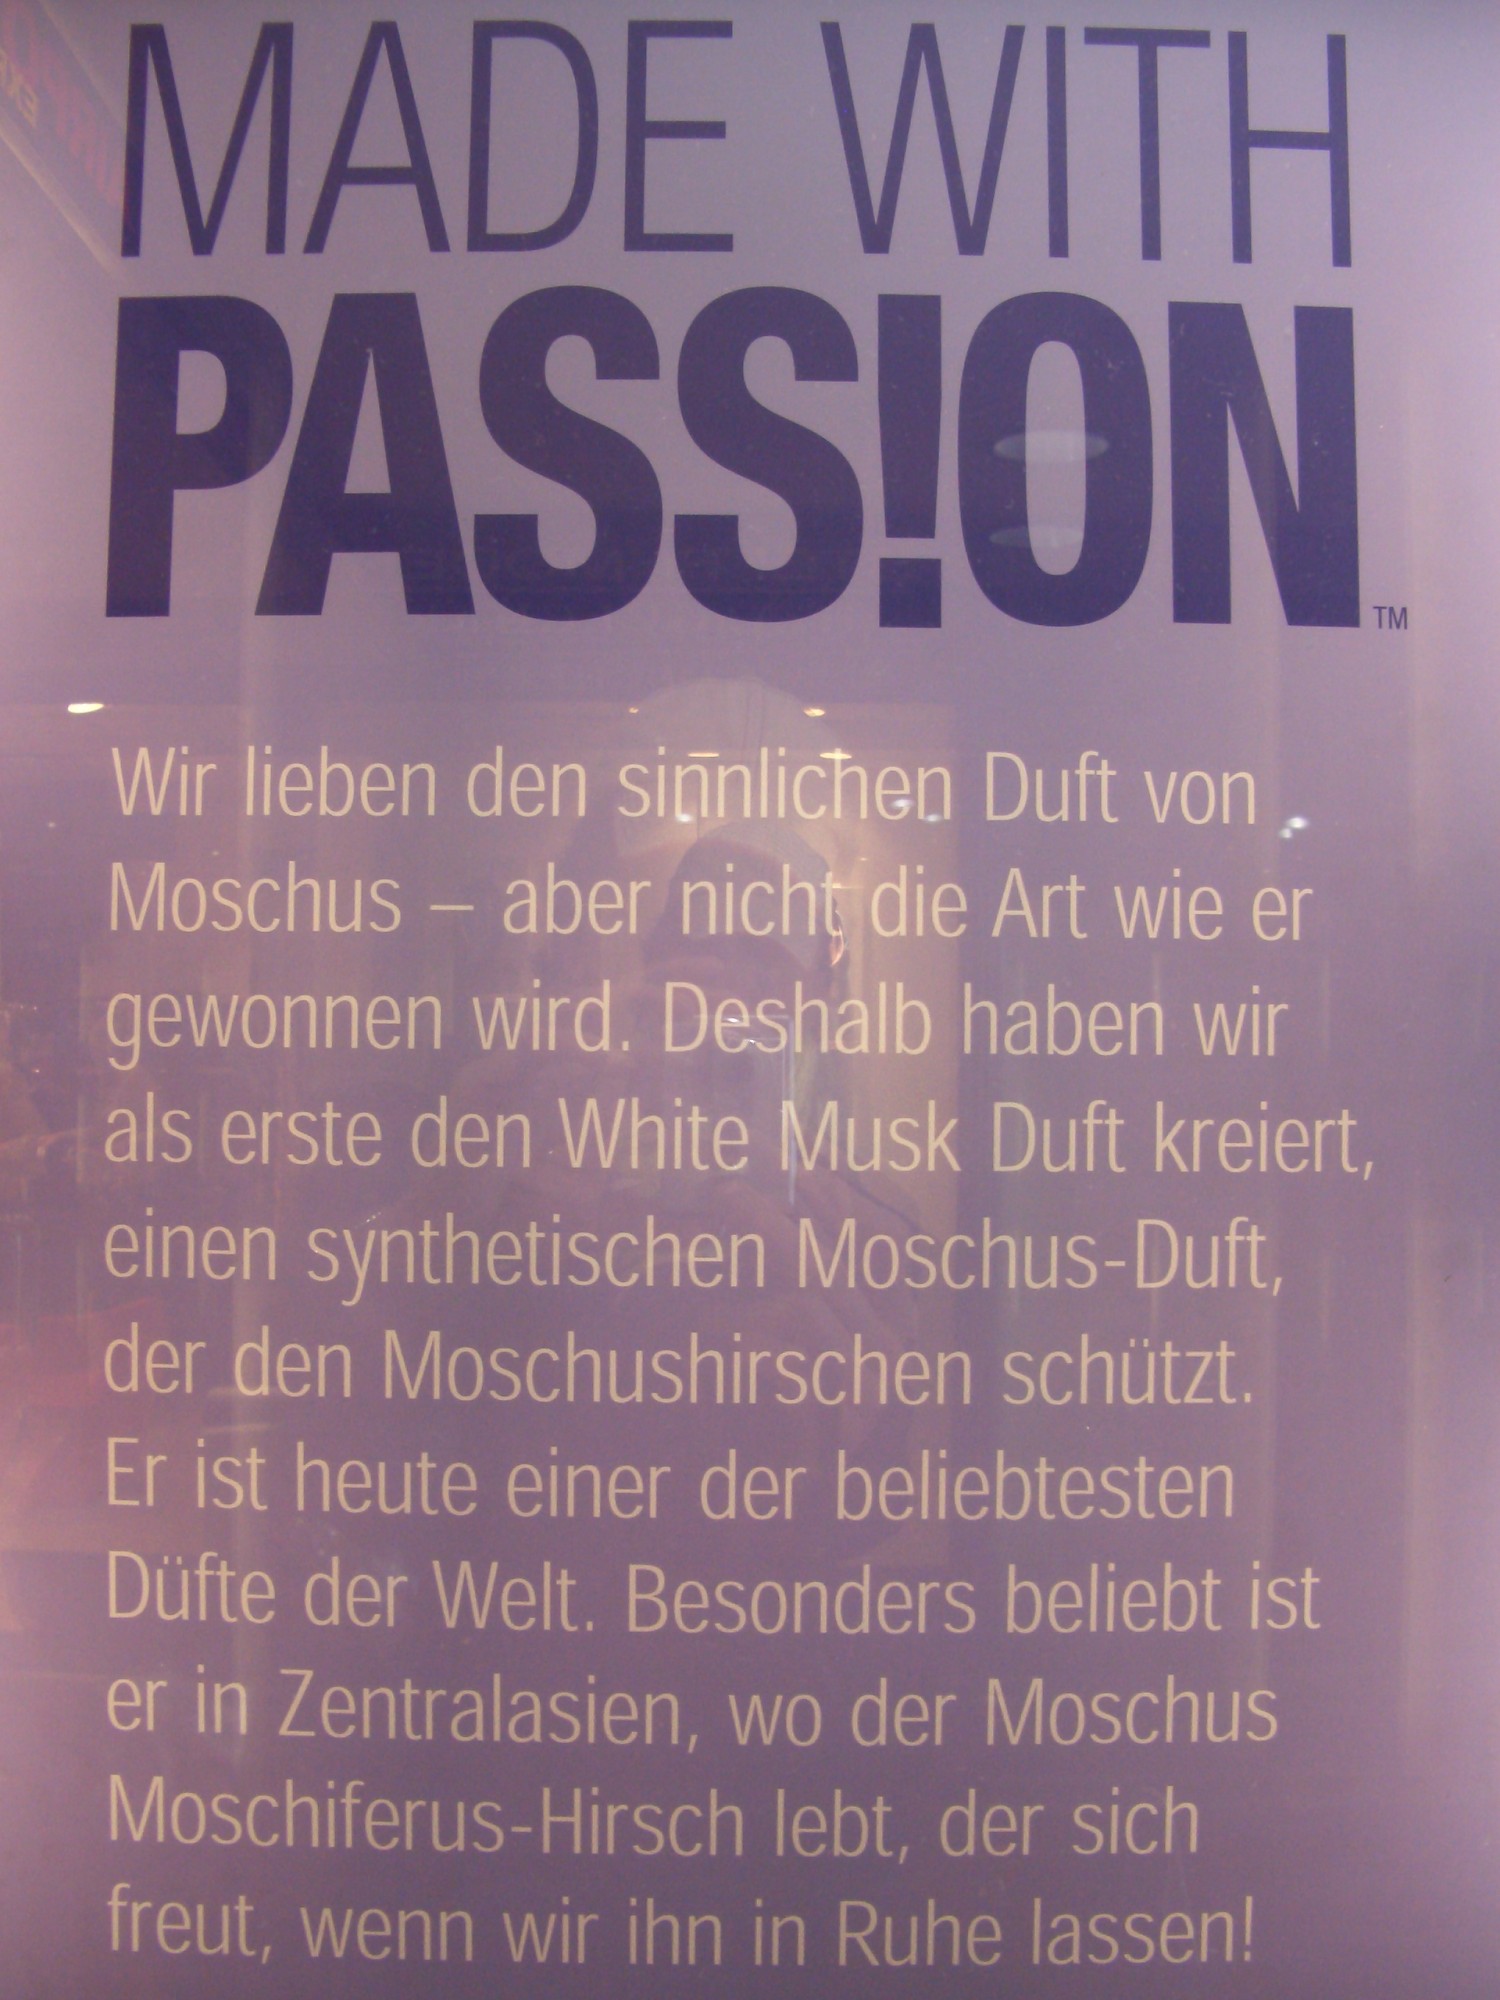 Made with Passion - Wir lieben den sinnlichen Duft von Moschus